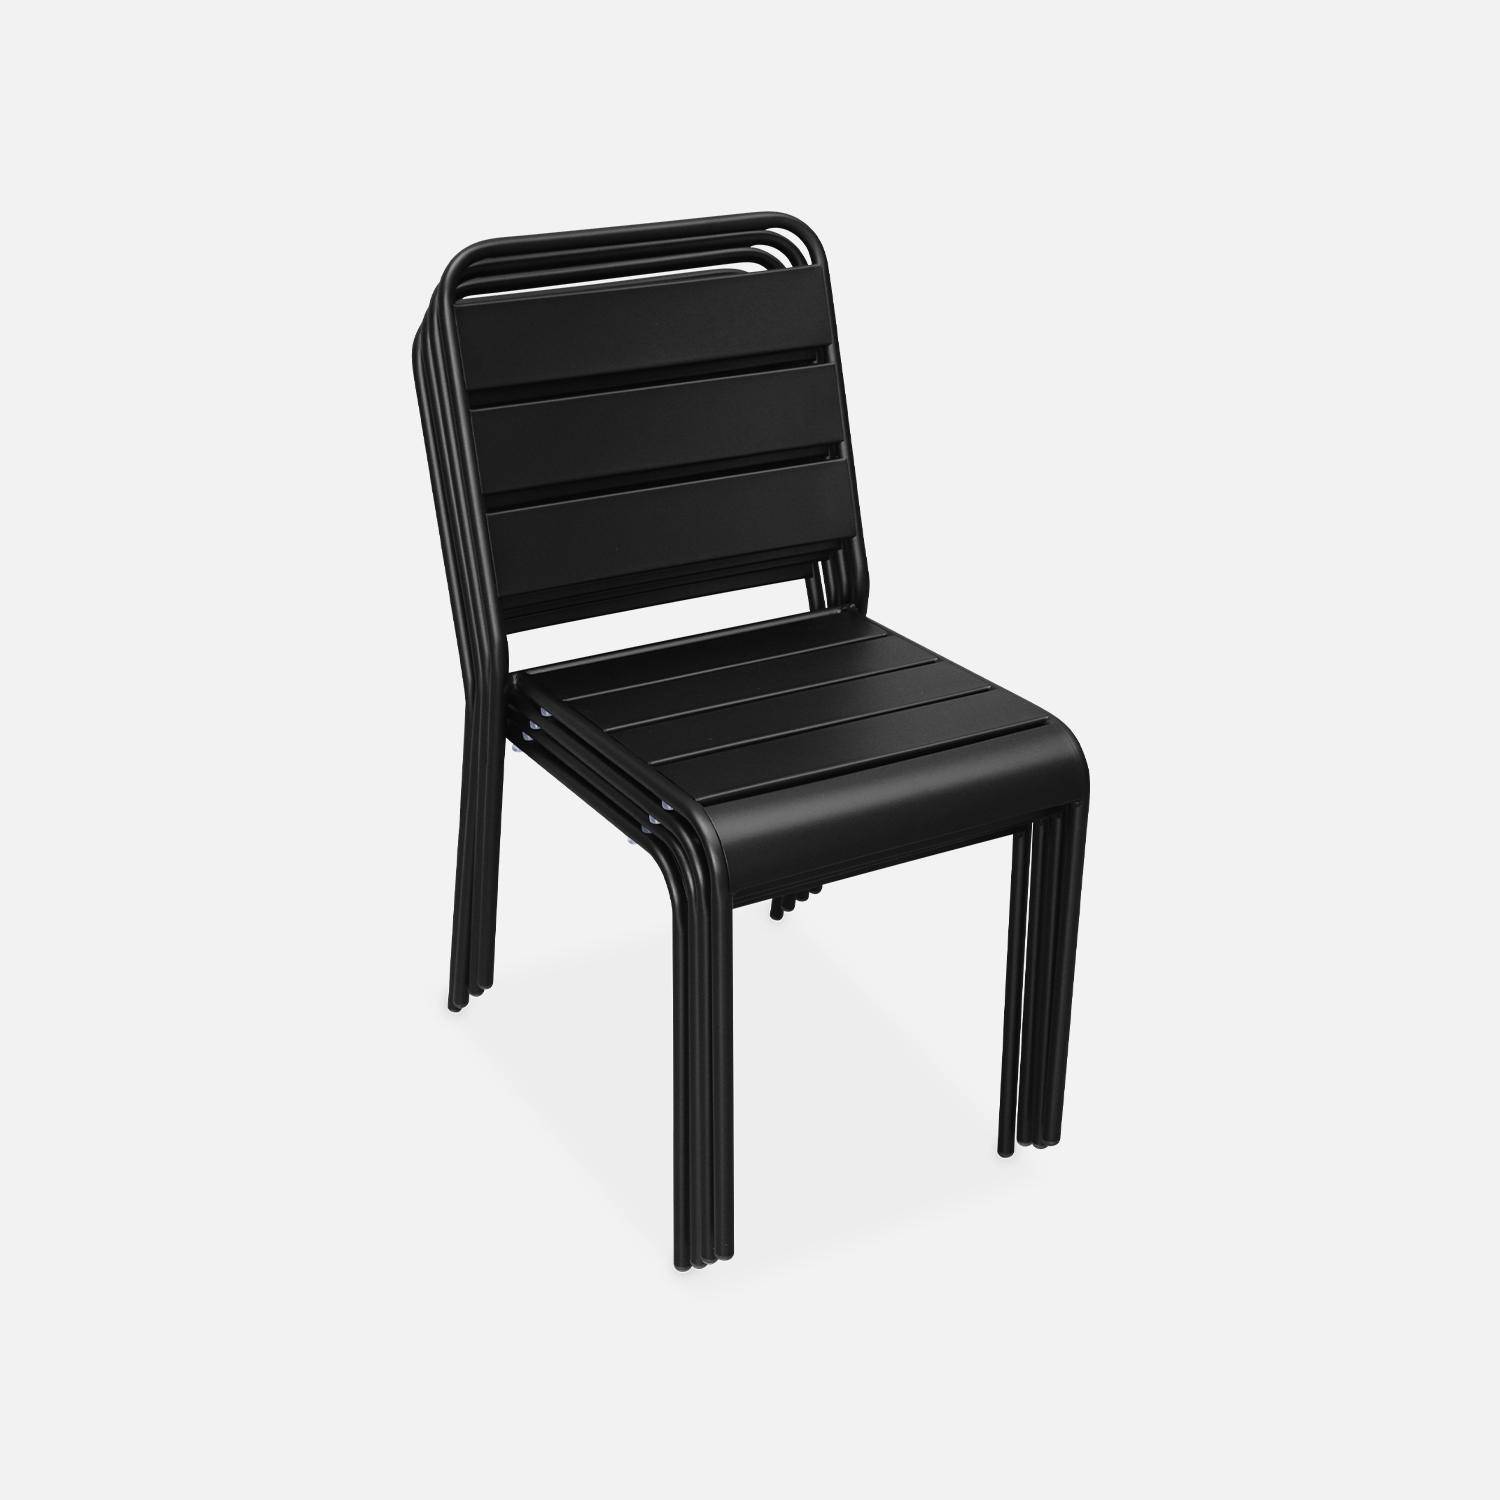 Lot de 4 chaises intérieur / extérieur en métal peinture antirouille empilables coloris noir,sweeek,Photo3